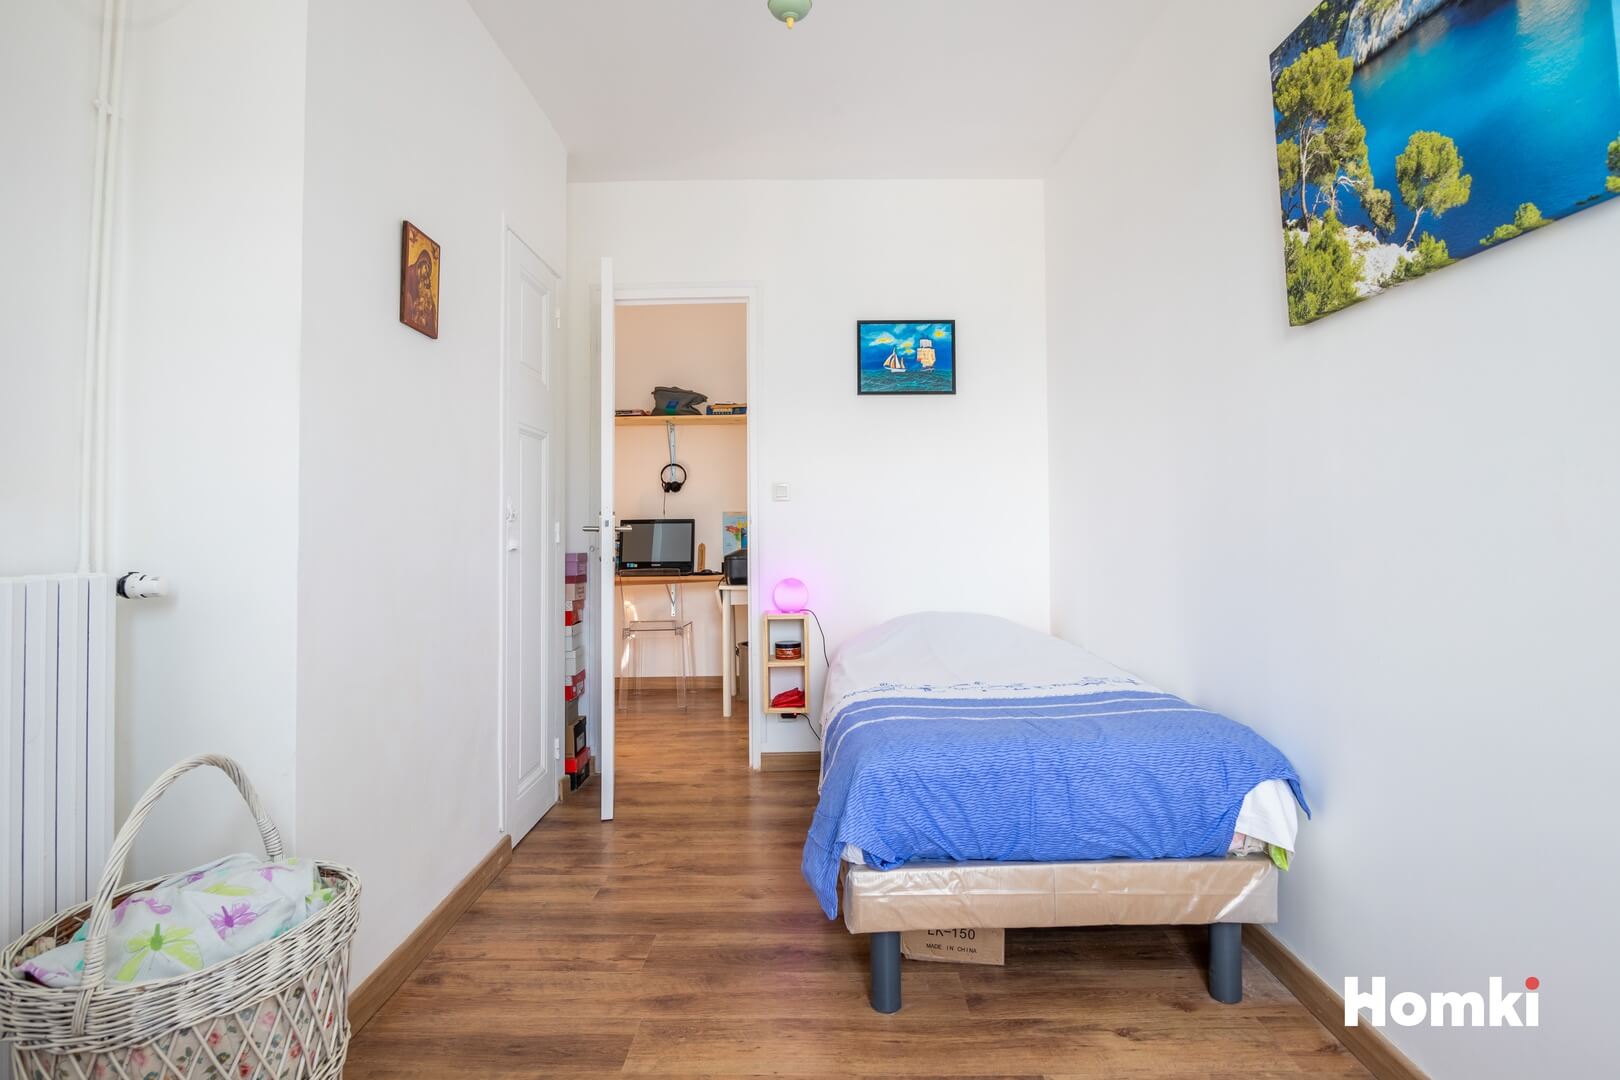 Homki - Vente Appartement  de 75.0 m² à Digne-les-Bains 04000